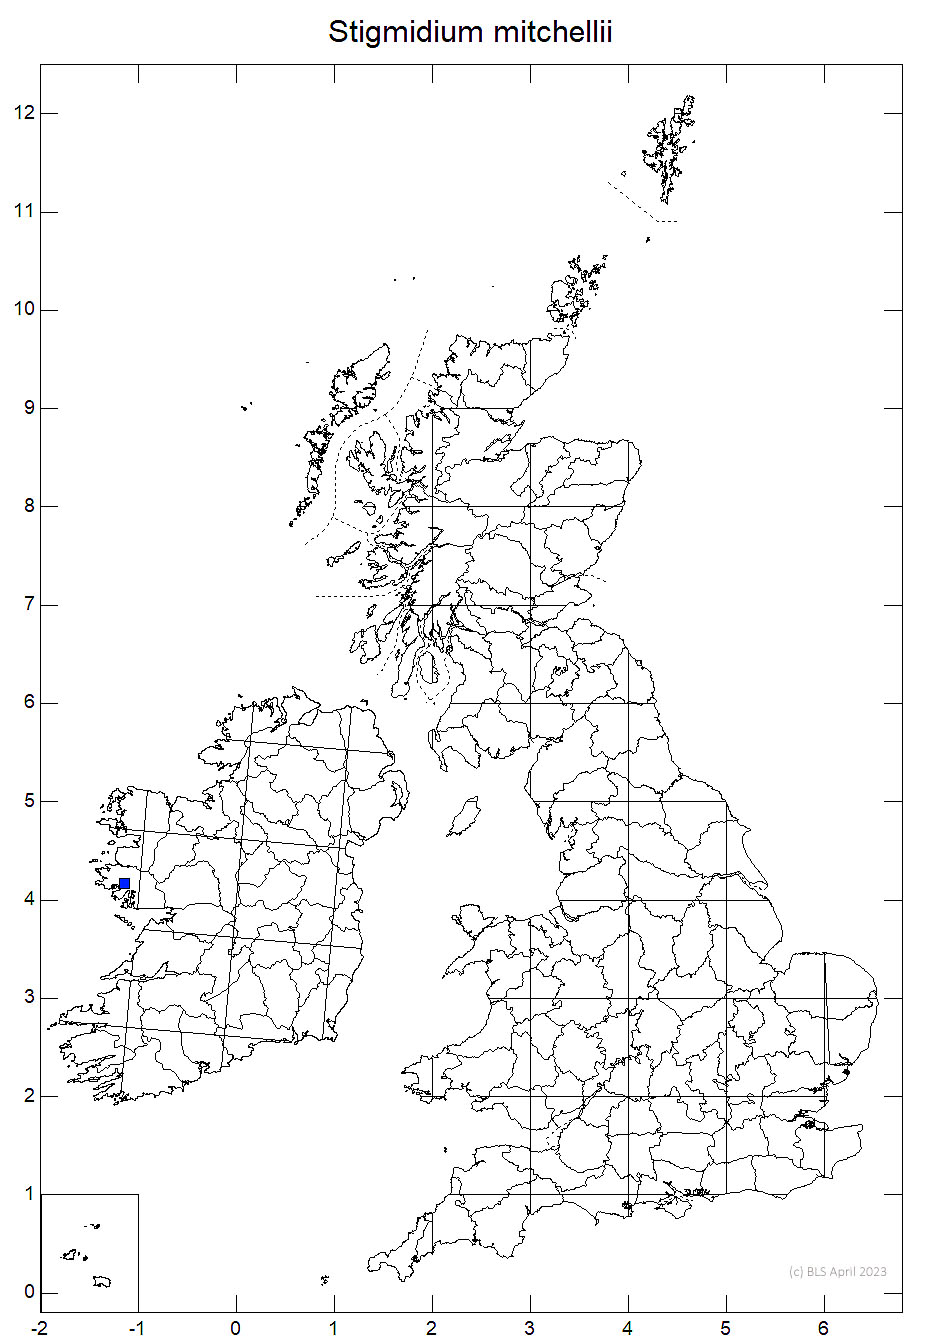 Stigmidium mitchellii 10km sq distribution map